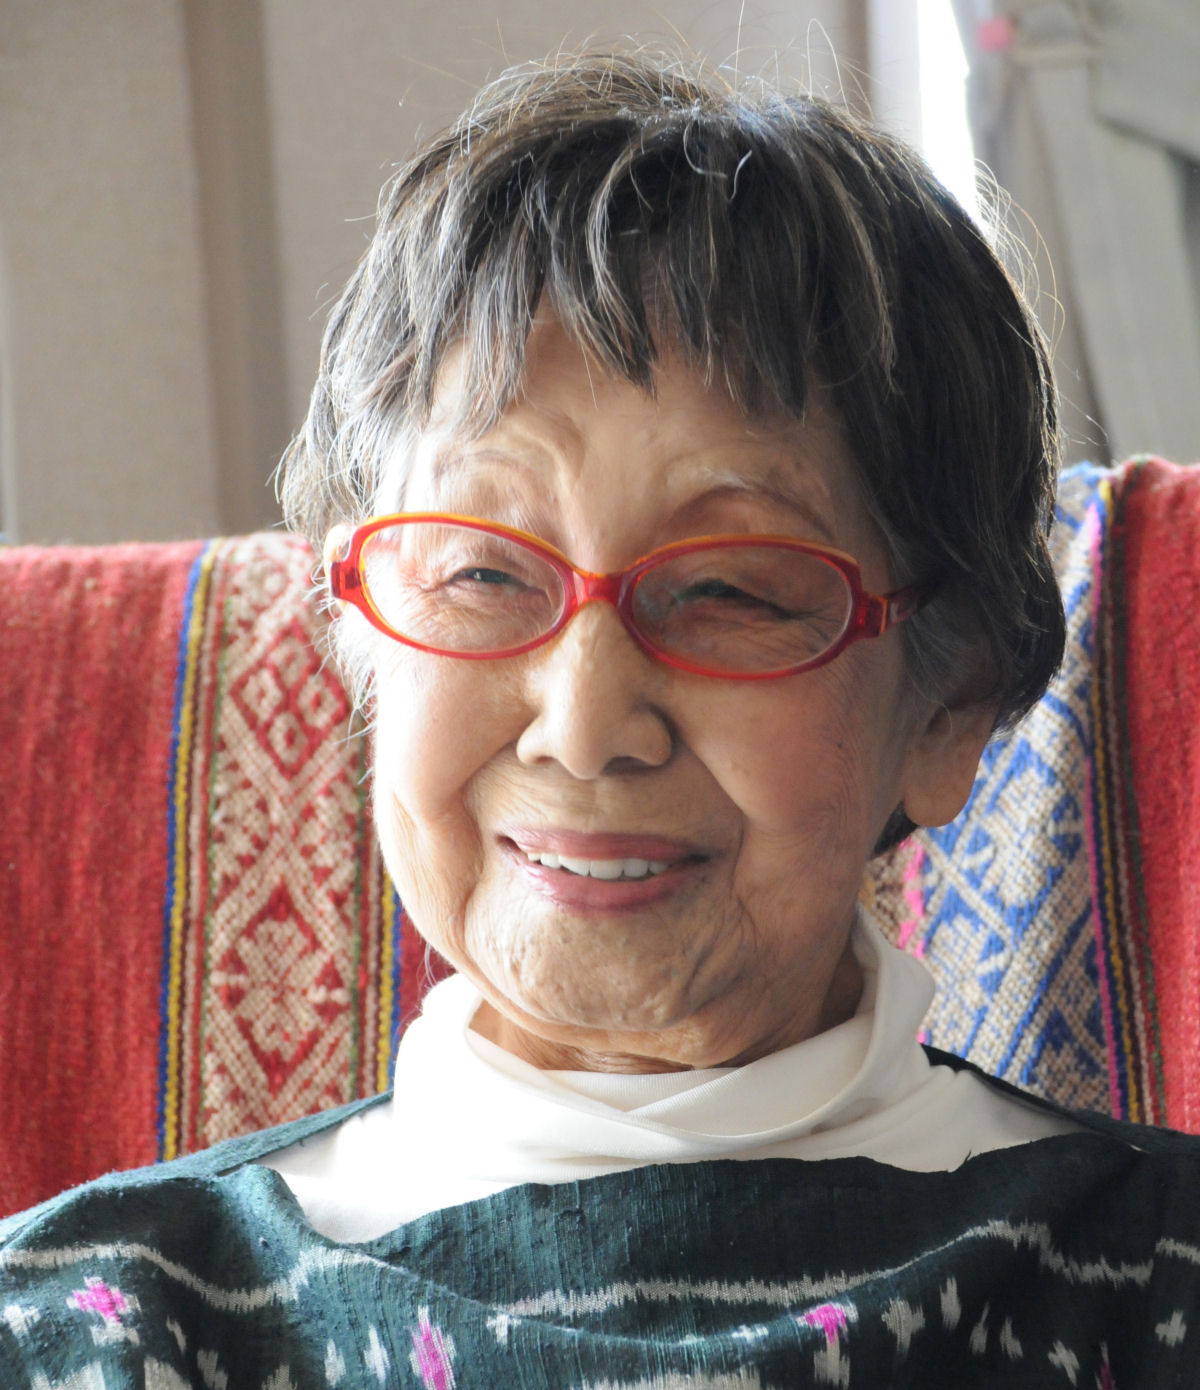 A 1 fotojornalista do Japo ainda segue fazendo fotos com 101 anos 01